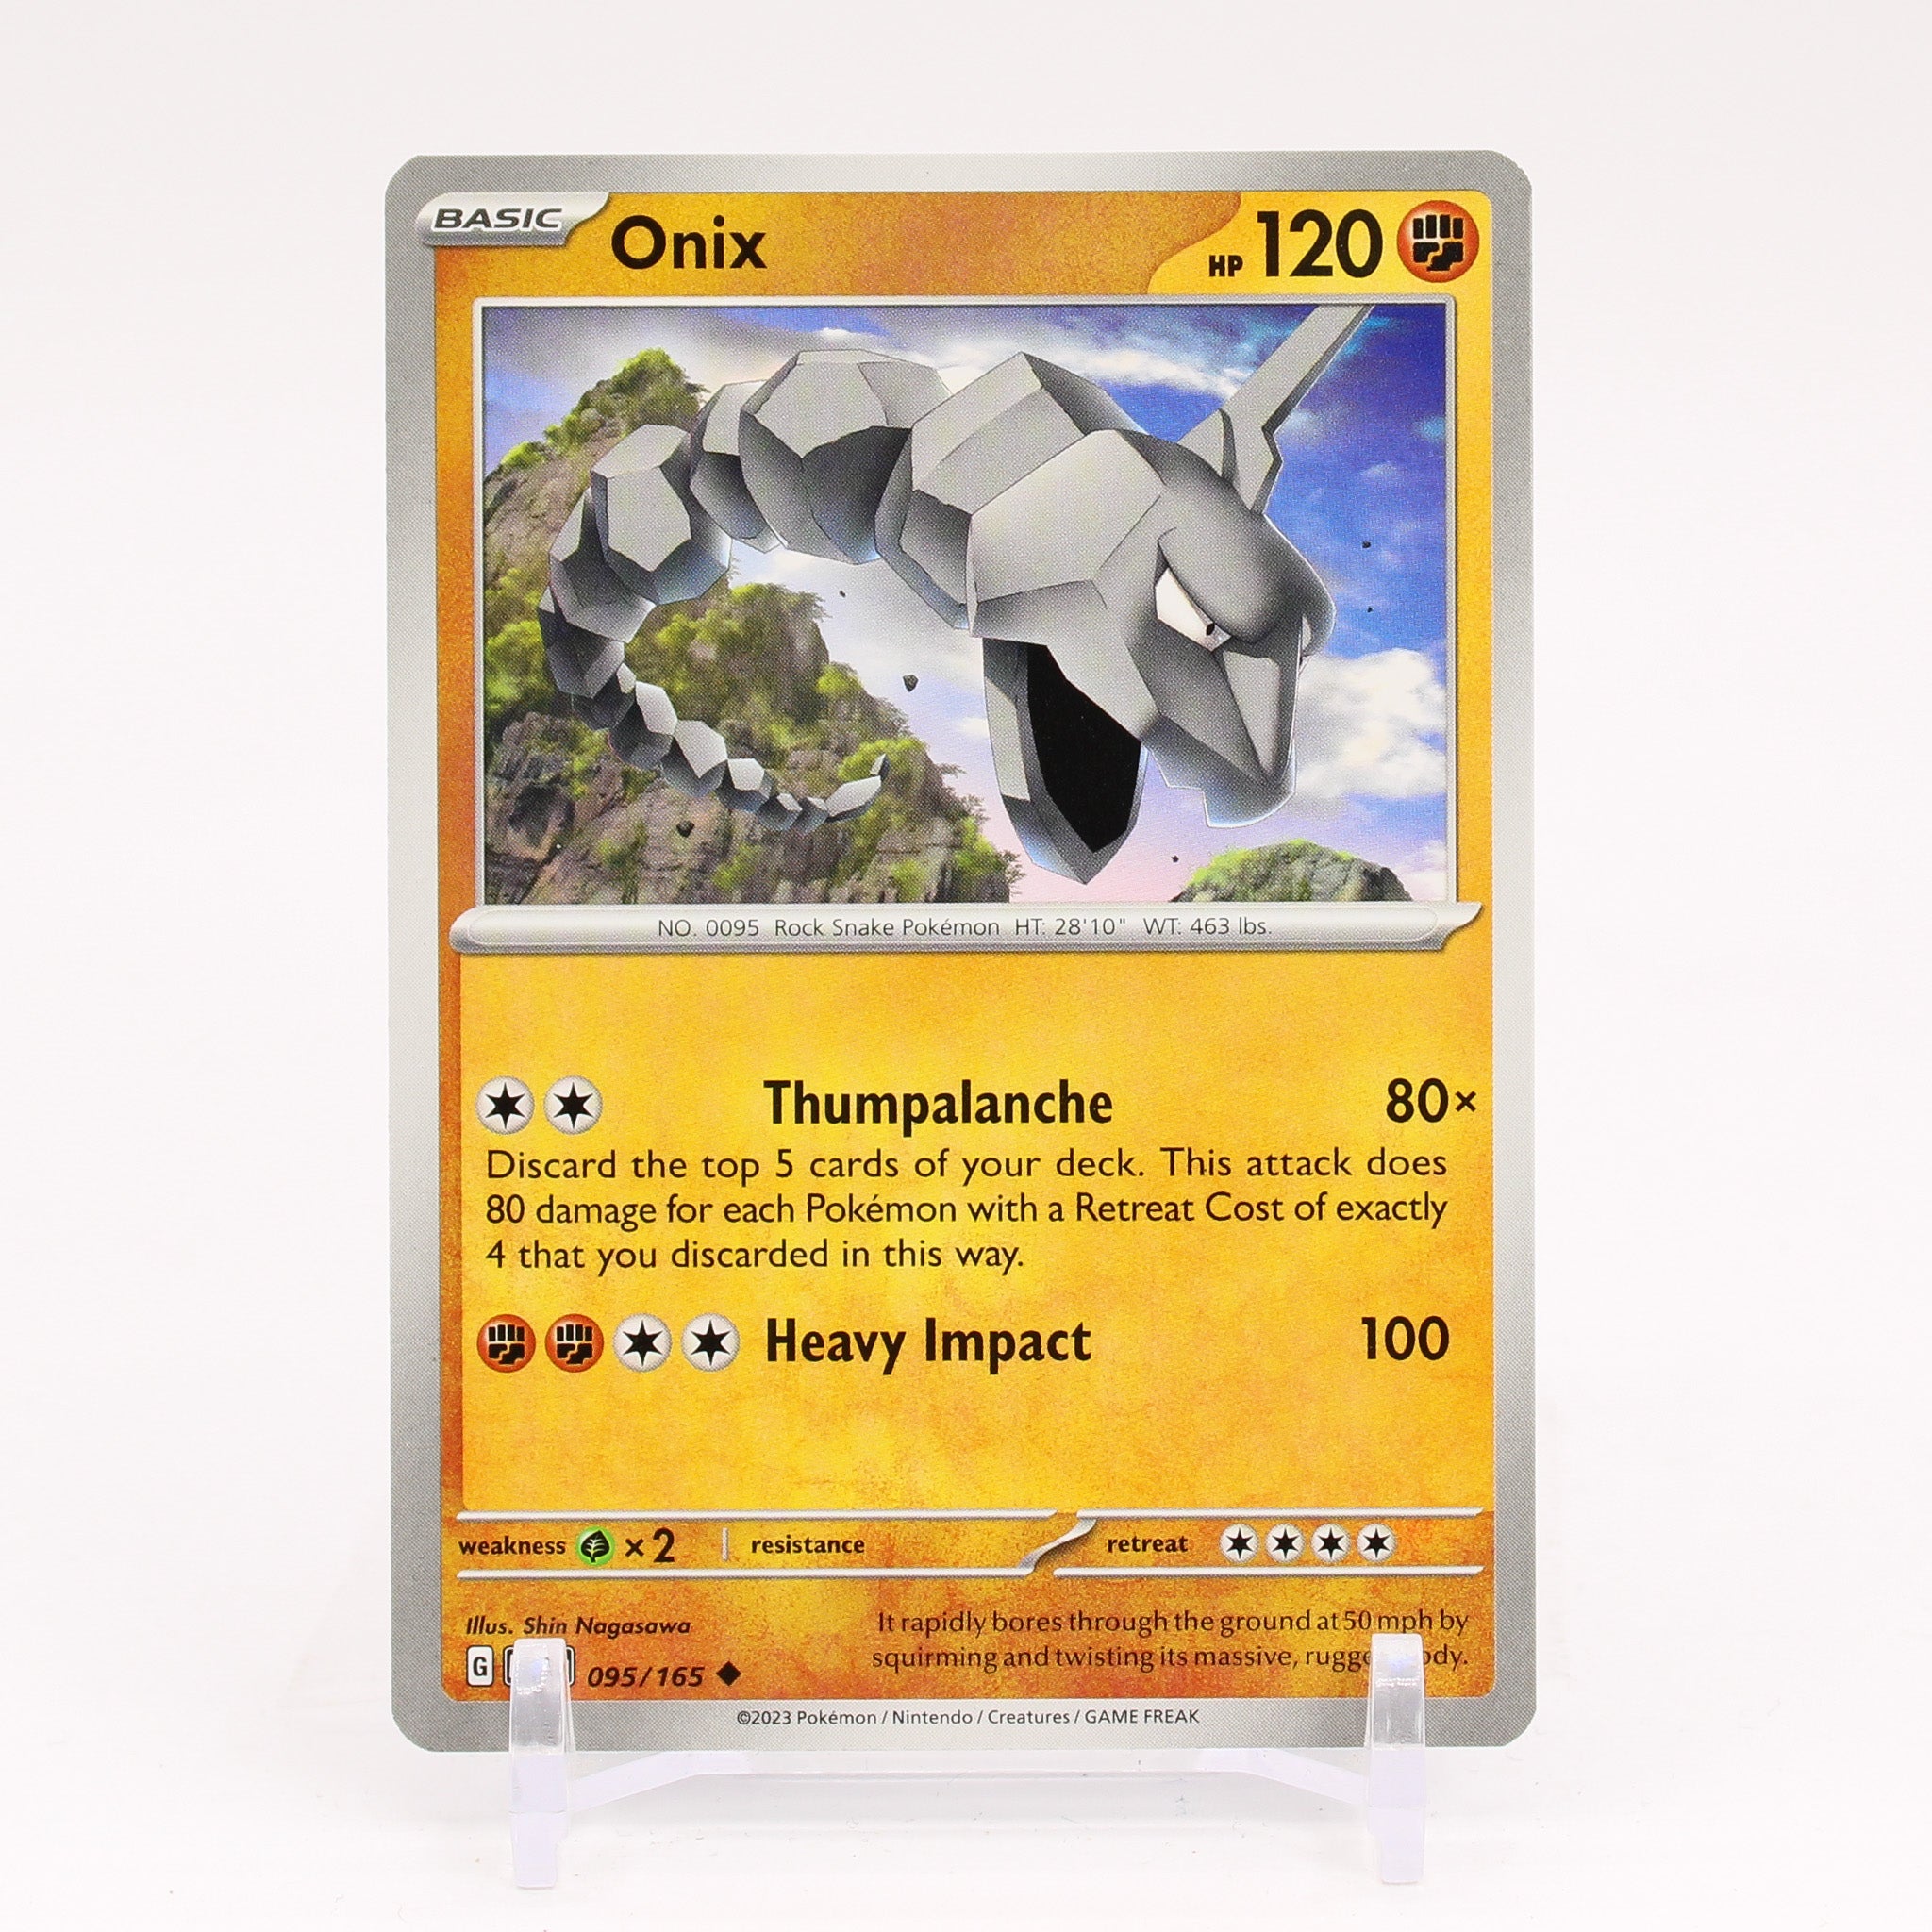 OC - meet Aquaponix! An alternate onix evolution : r/pokemon